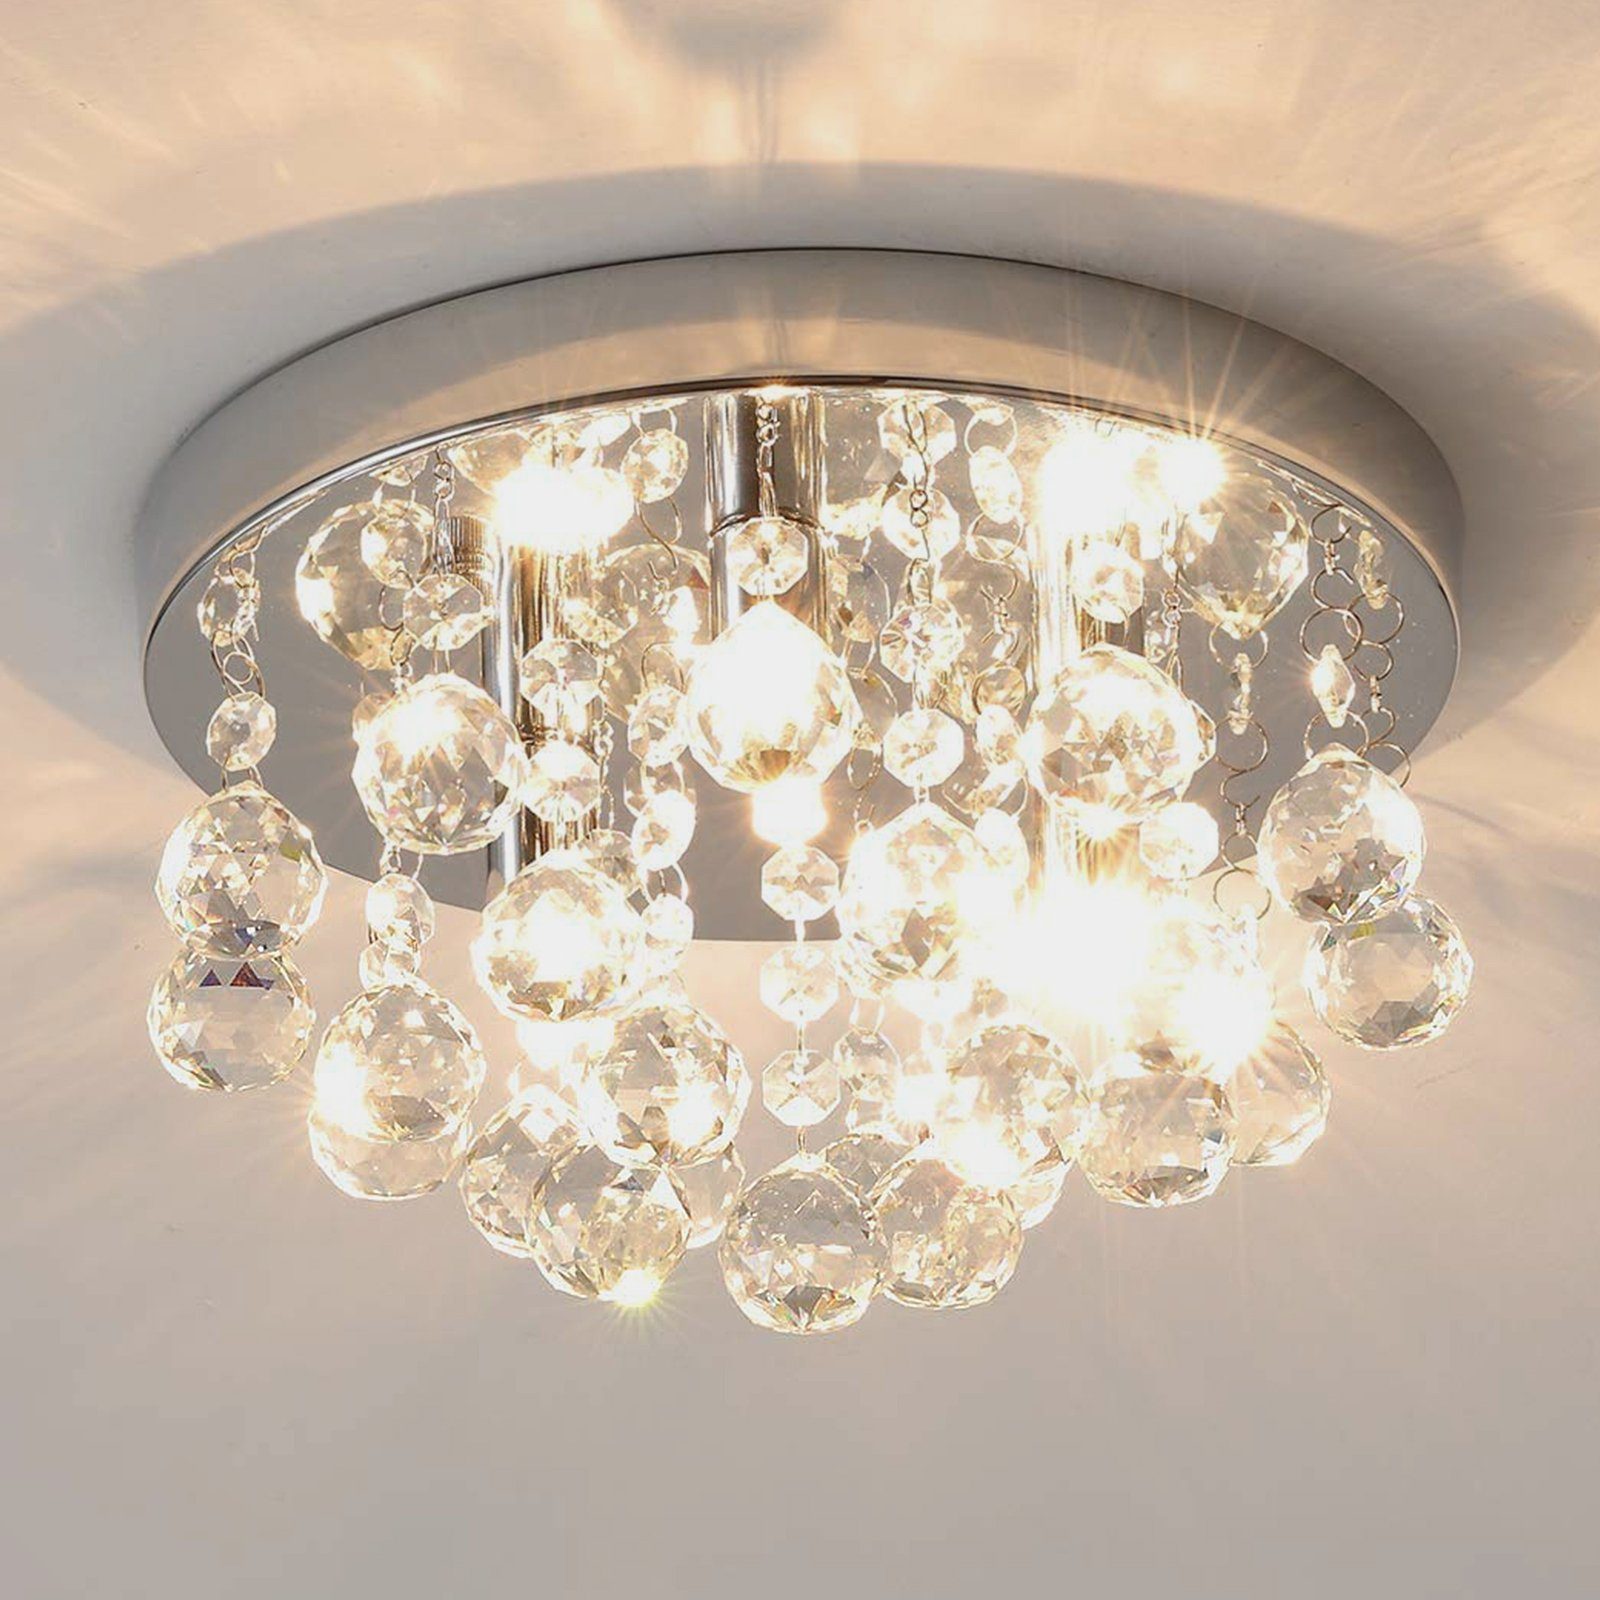 LED Deckenlampe Kristall Deckenleuchte Kronleuchter Wohnzimmer Leuchte Lampe DE 